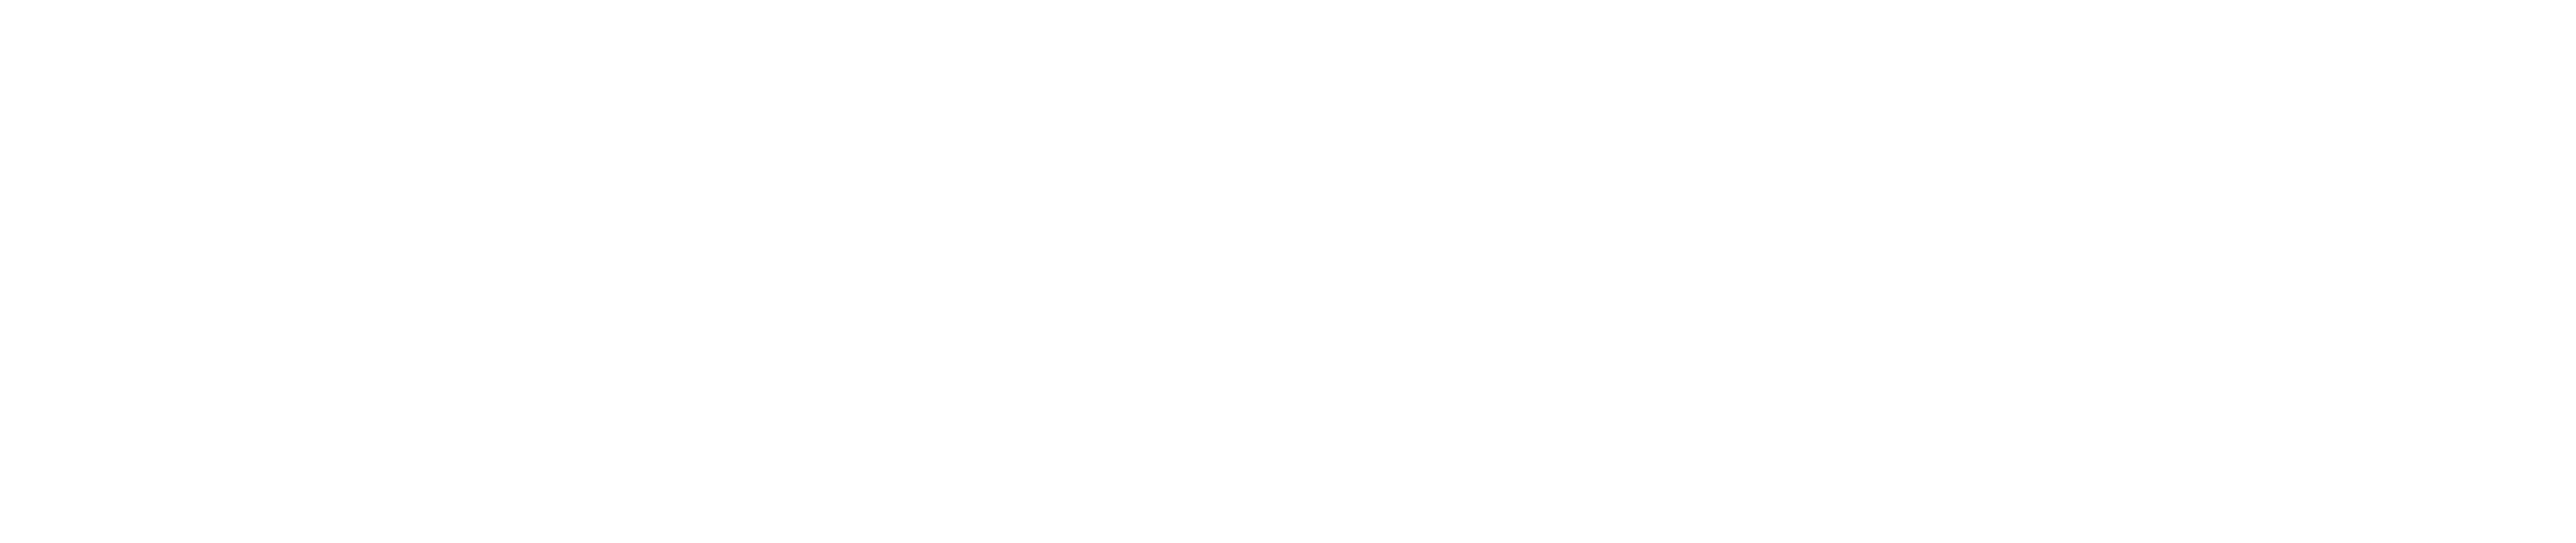 Kadrovska asistenca logo beli